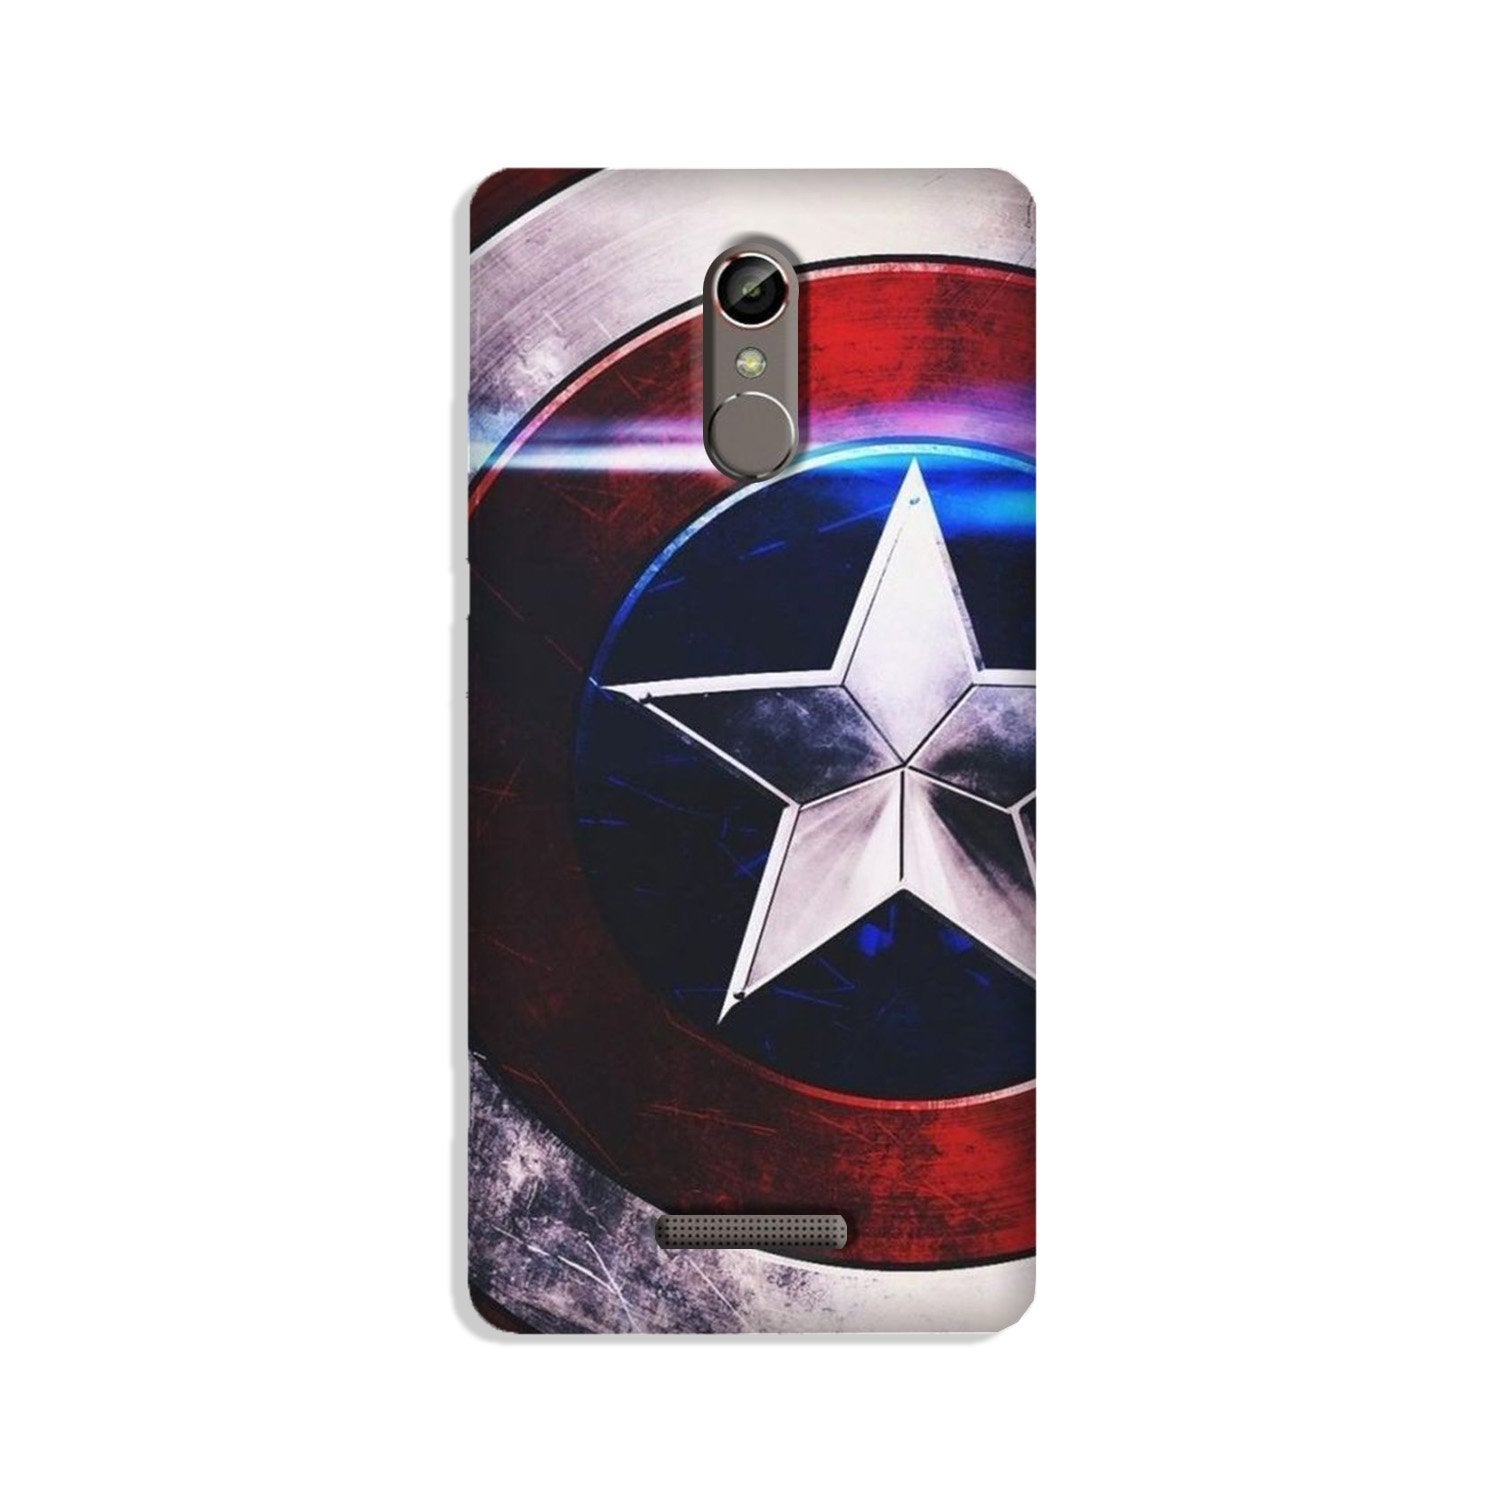 Captain America Shield Case for Gionee S6s (Design No. 250)